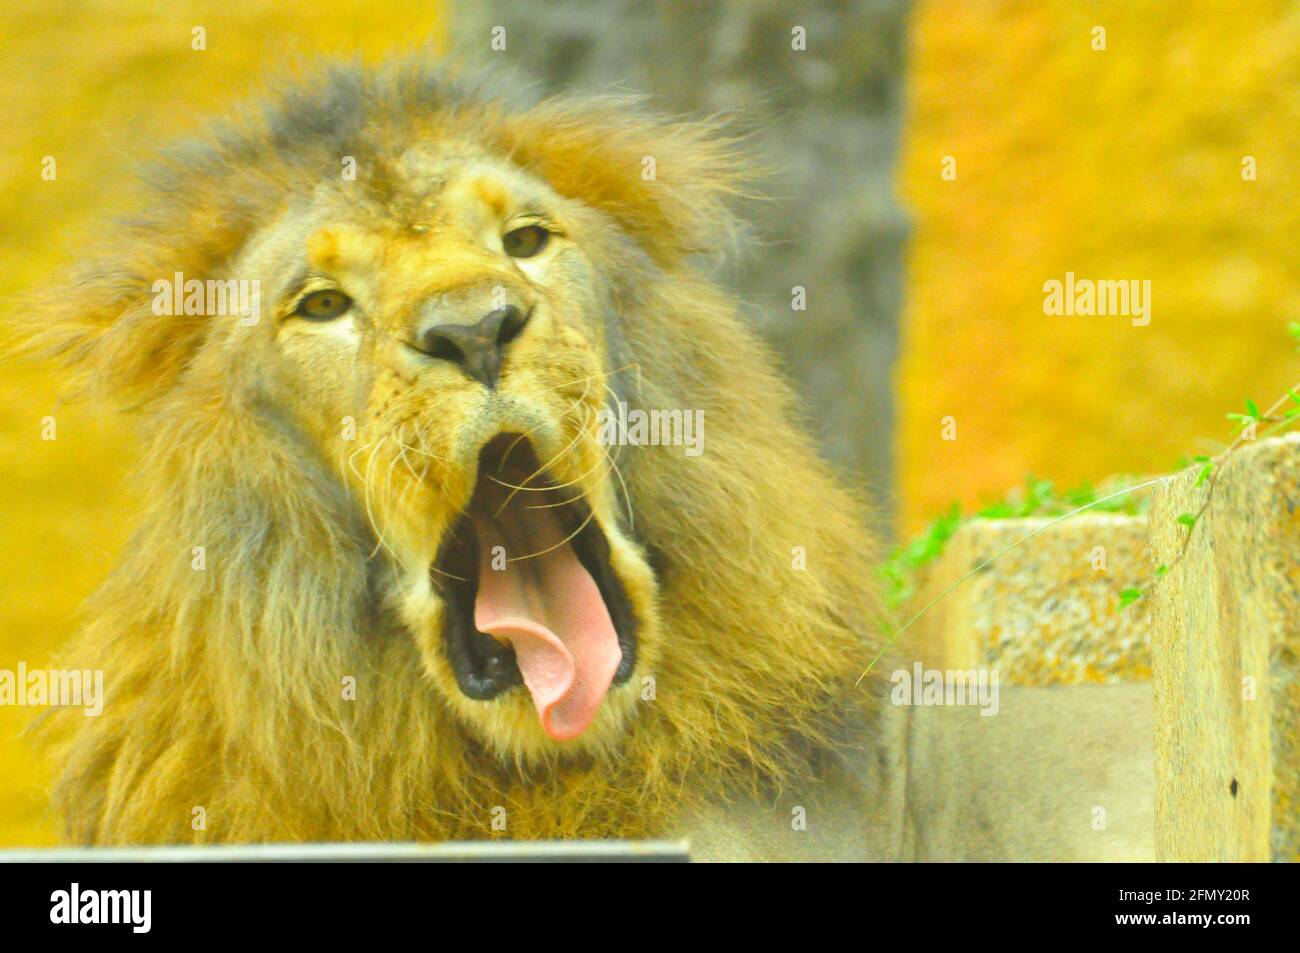 León africano (Panthera leo), el rey de las bestias Foto de stock